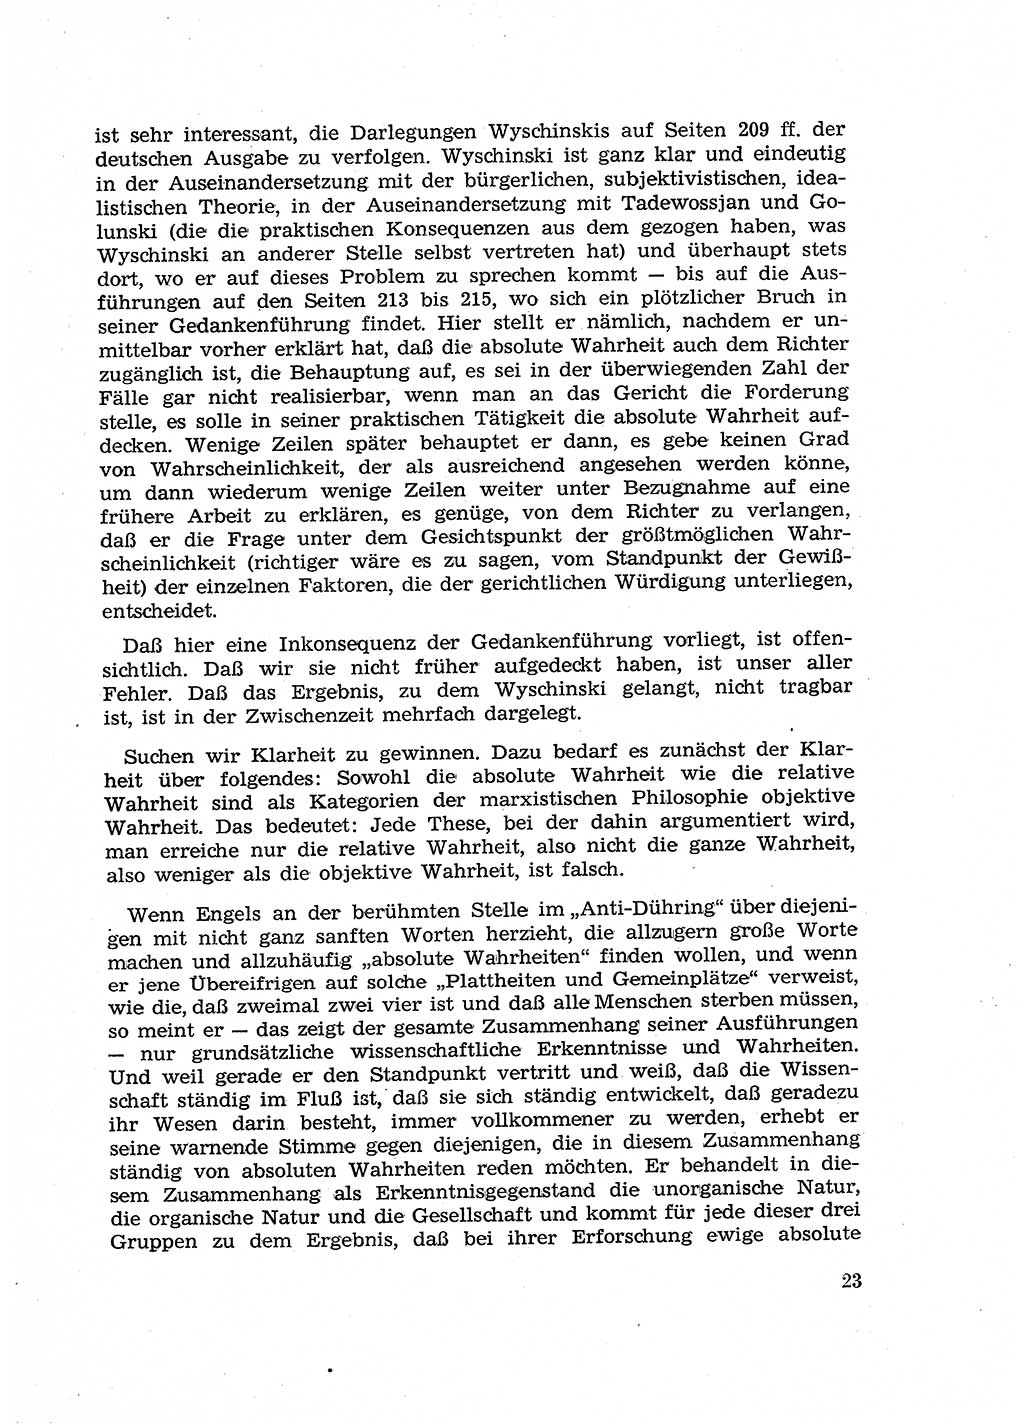 Fragen des Beweisrechts im Strafprozess [Deutsche Demokratische Republik (DDR)] 1956, Seite 23 (Fr. BeweisR. Str.-Proz. DDR 1956, S. 23)